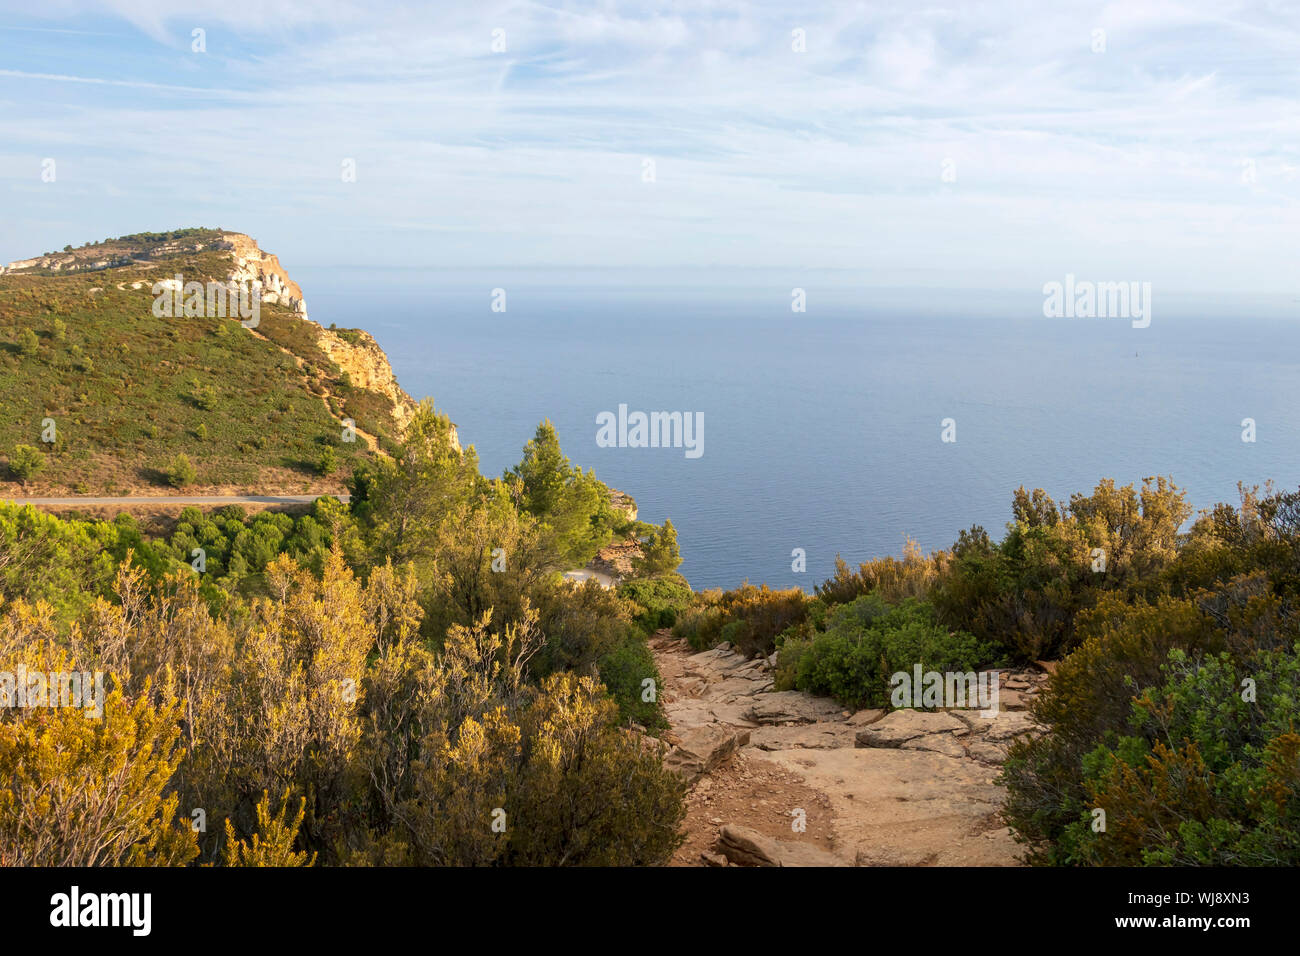 La falaise la plus haute du Cap Canaille de la France, en grès ocre pointe sur la côte méditerranéenne entre les villes de Cassis et de La Ciotat Banque D'Images